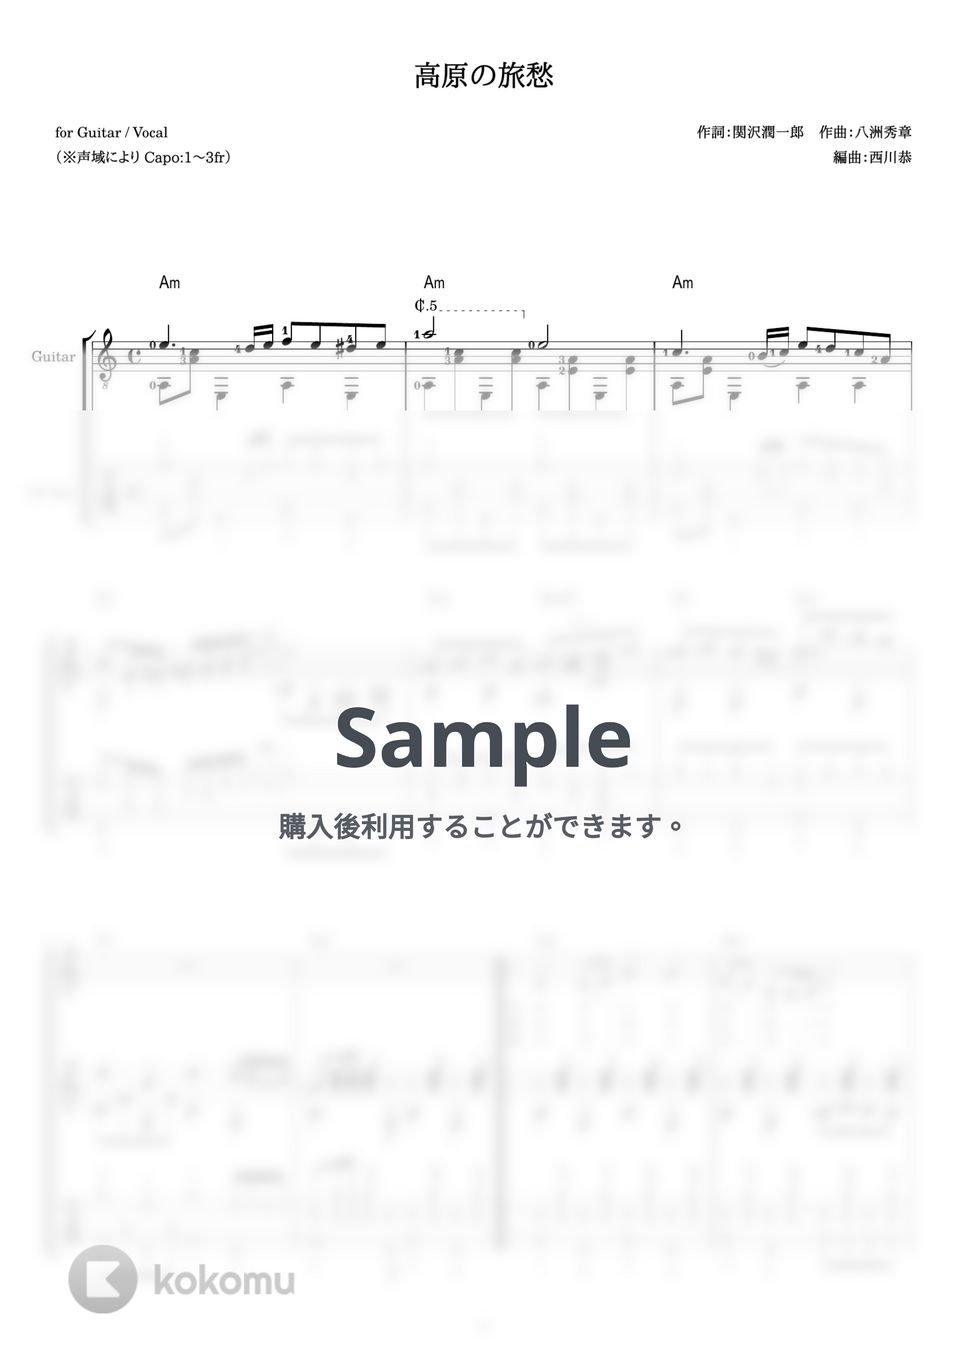 伊藤久男 - 高原の旅愁 (ギター伴奏 / 弾き語り) by 西川恭